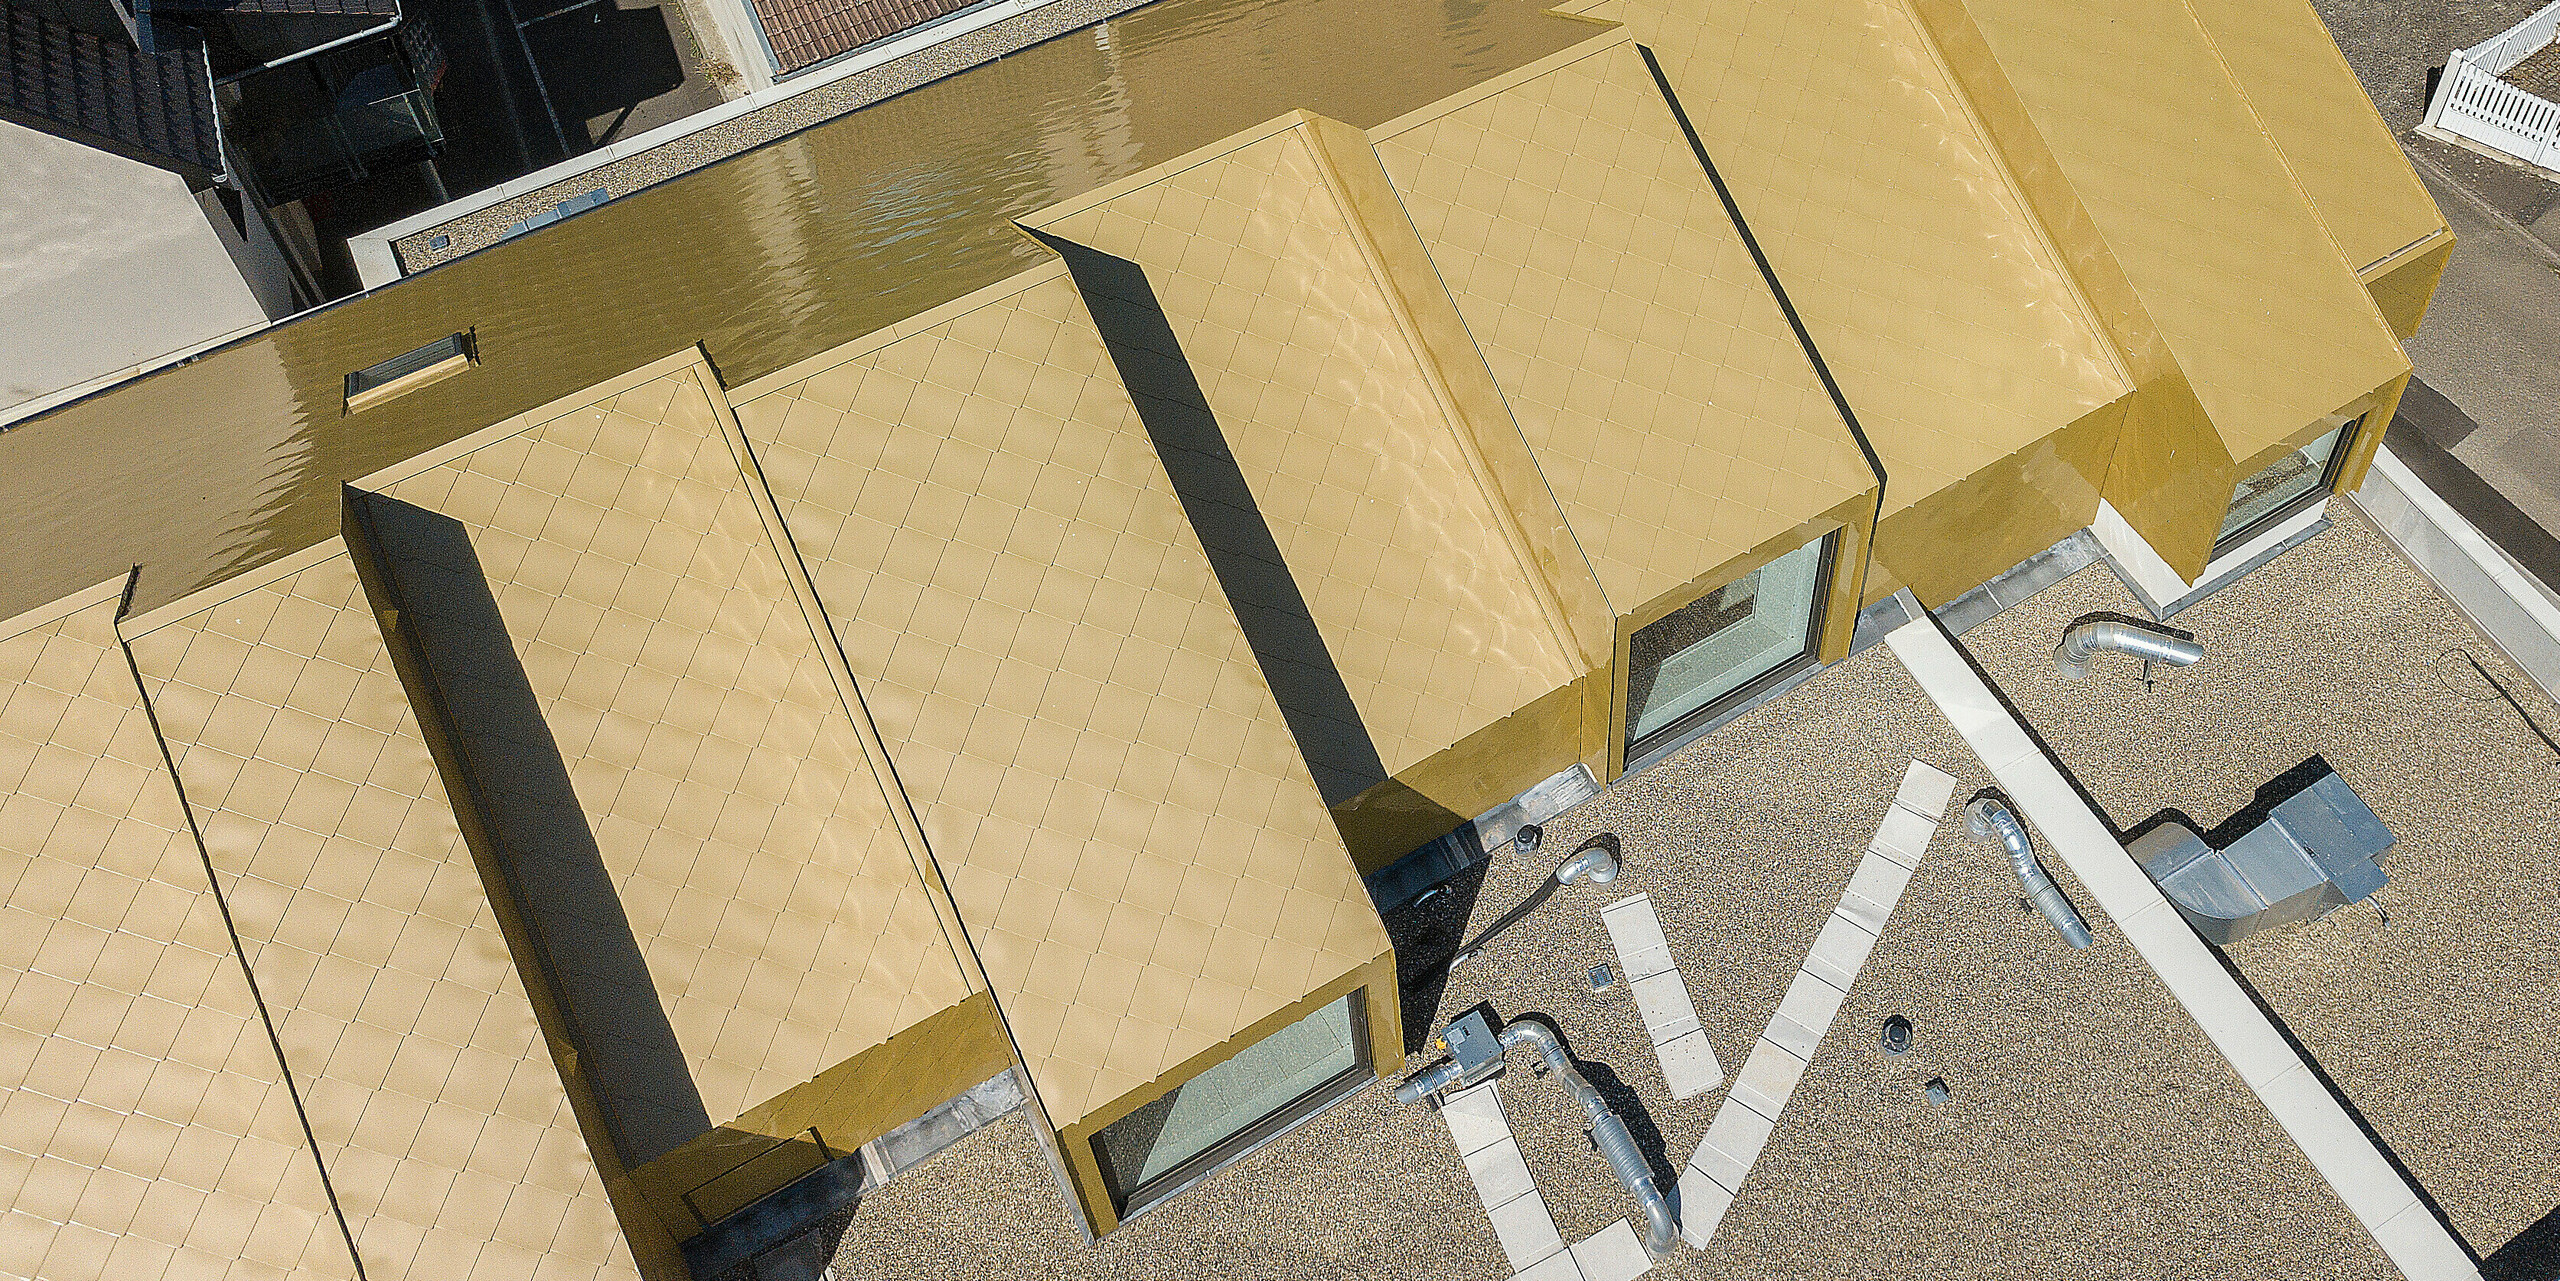 Vue d'en haut du toit doré du centre culturel de Fessenheim. Le nouveau toit a été recouvert de losanges de toiture PREFA 44 × 44 en Sparkling Gold. Les toits des bâtiments voisins sont visibles en arrière-plan.